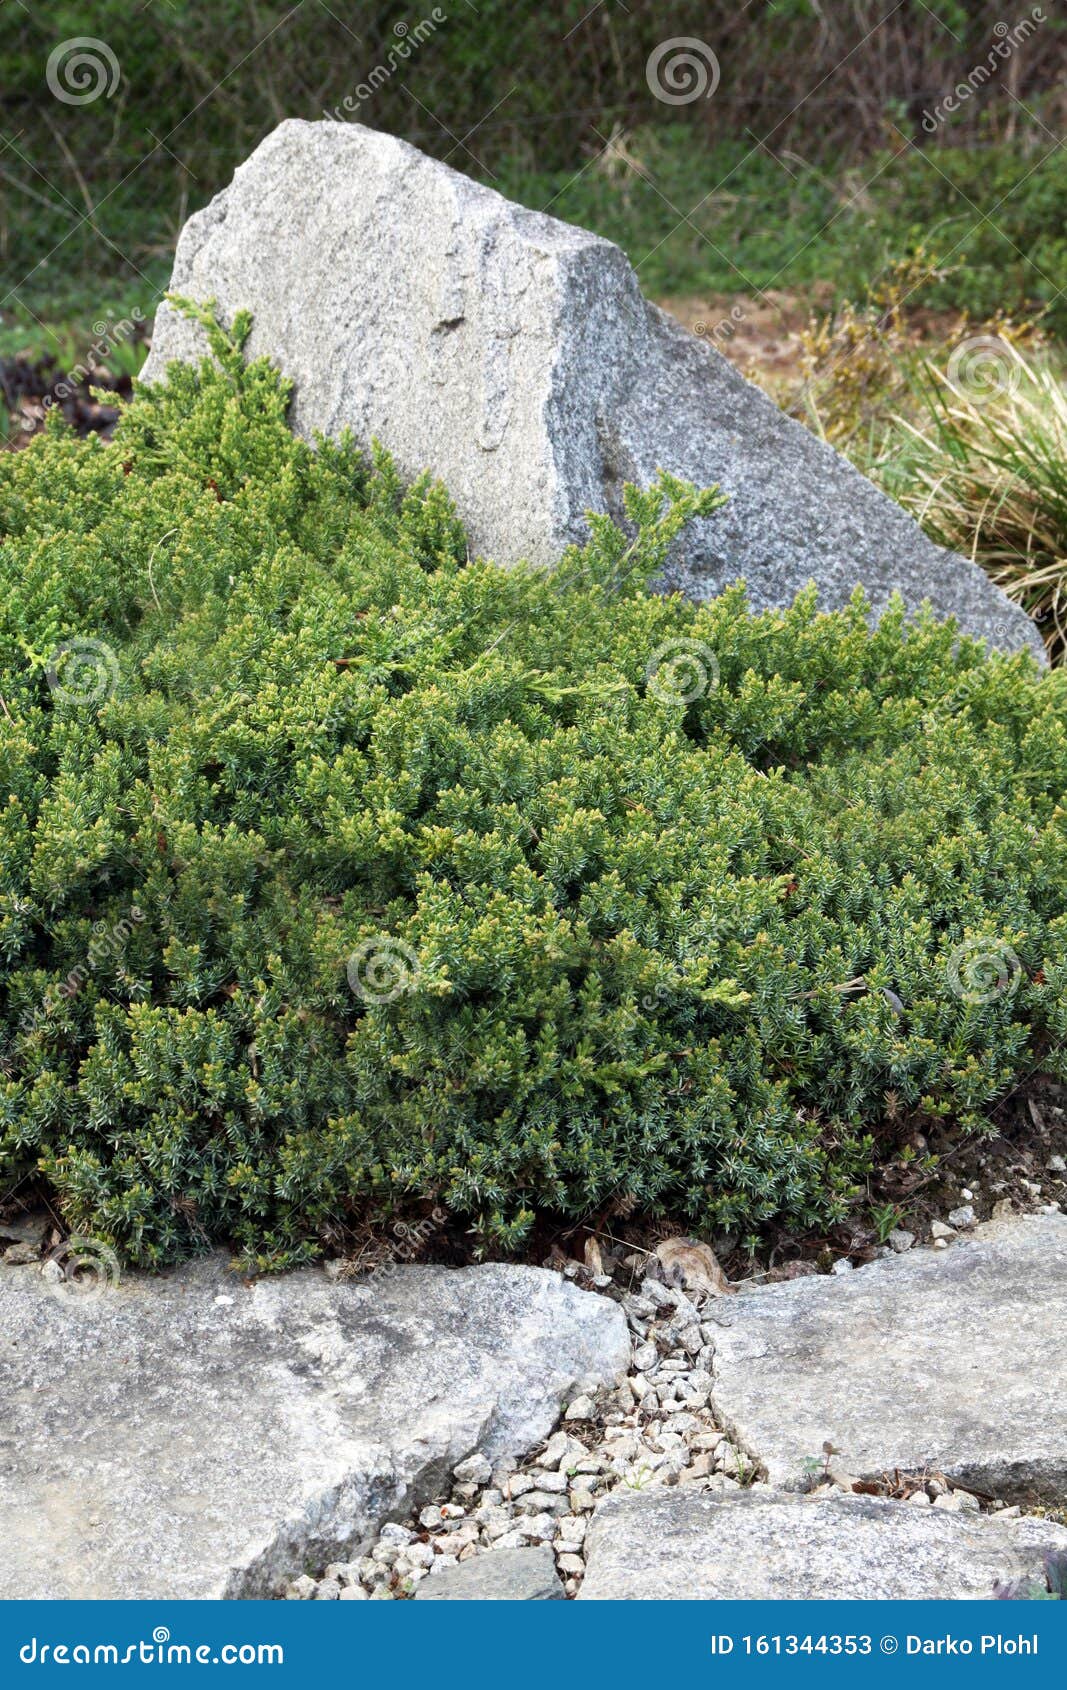 japanese juniper, juniperus procumbens